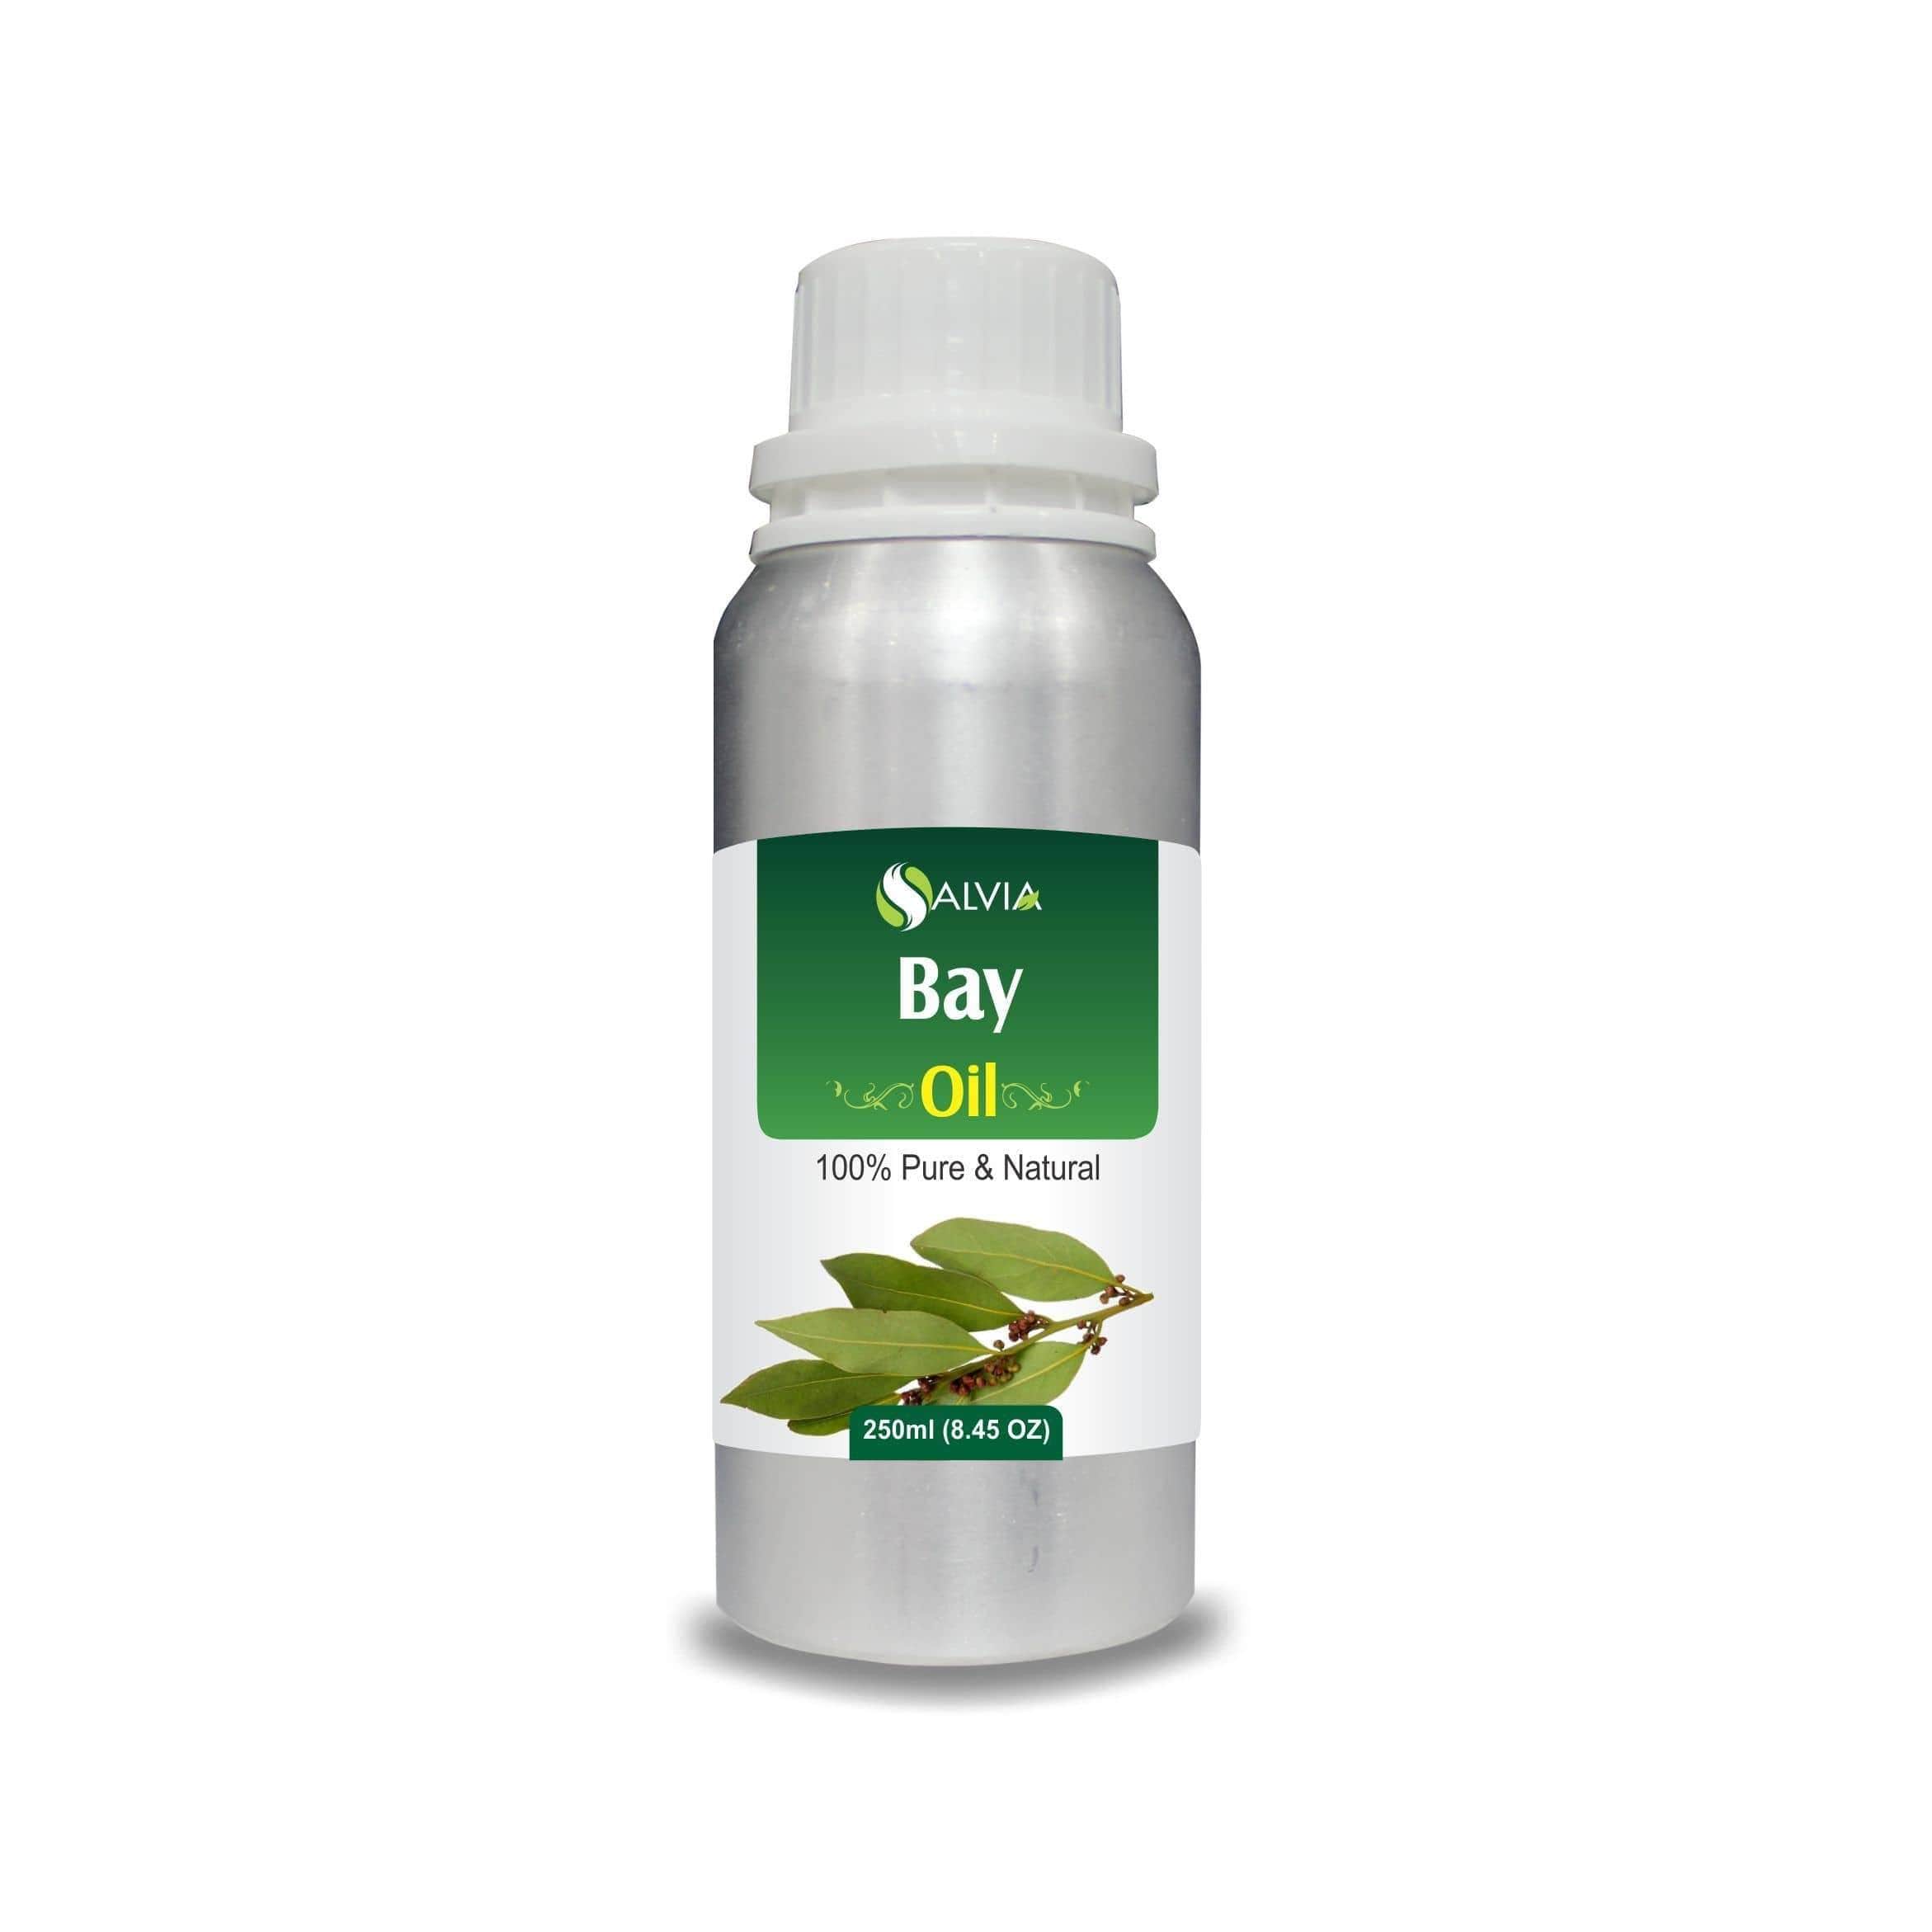 bay oil for hair